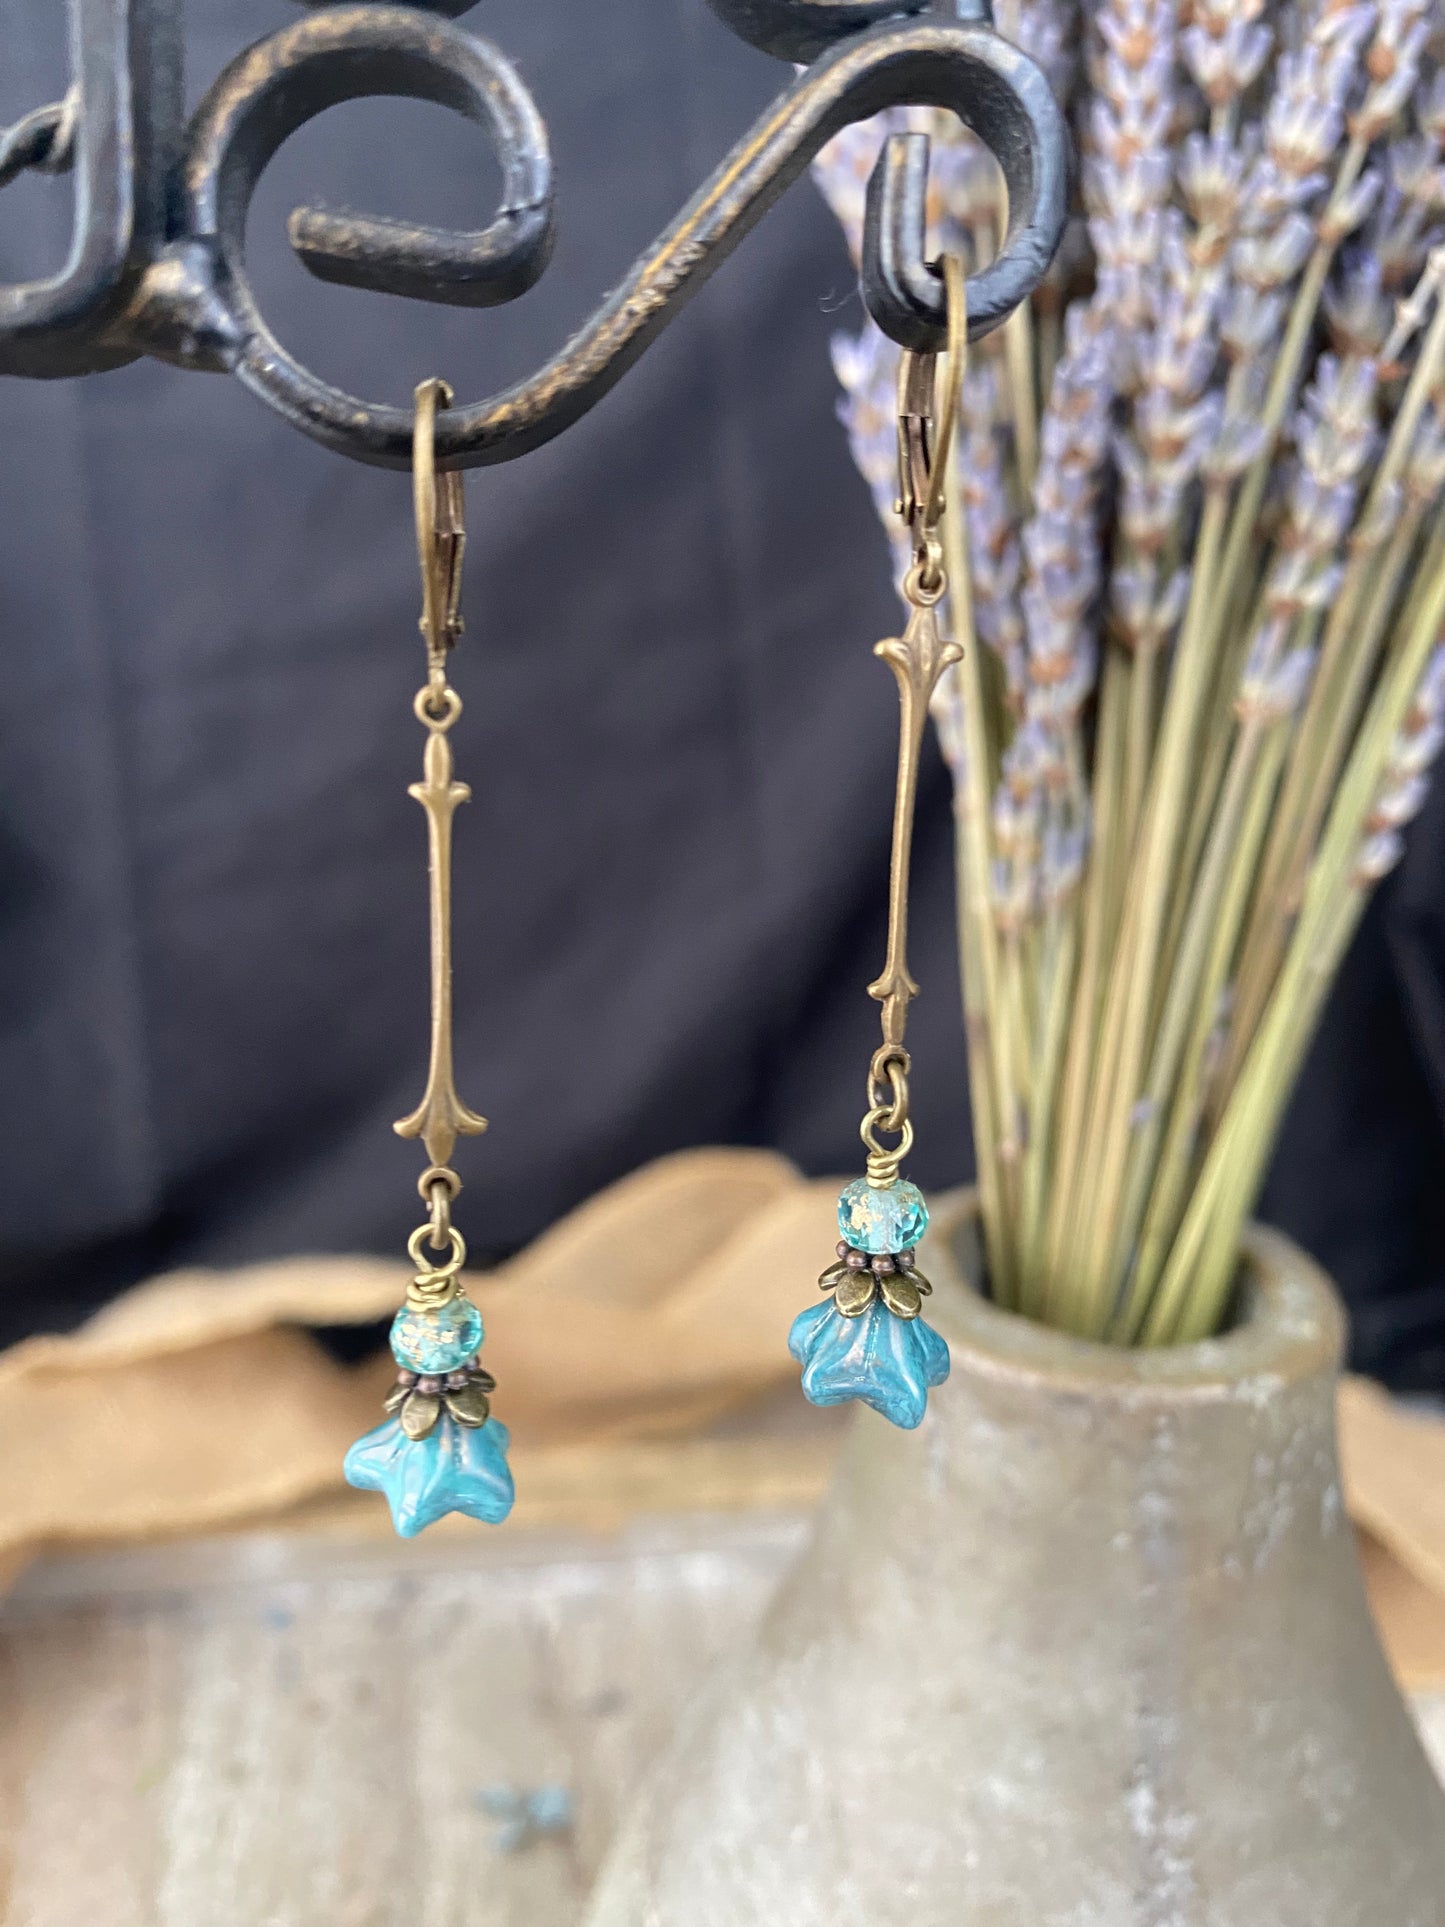 Blue flower Czech glass, teal Czech glass, bronze metal, earrings